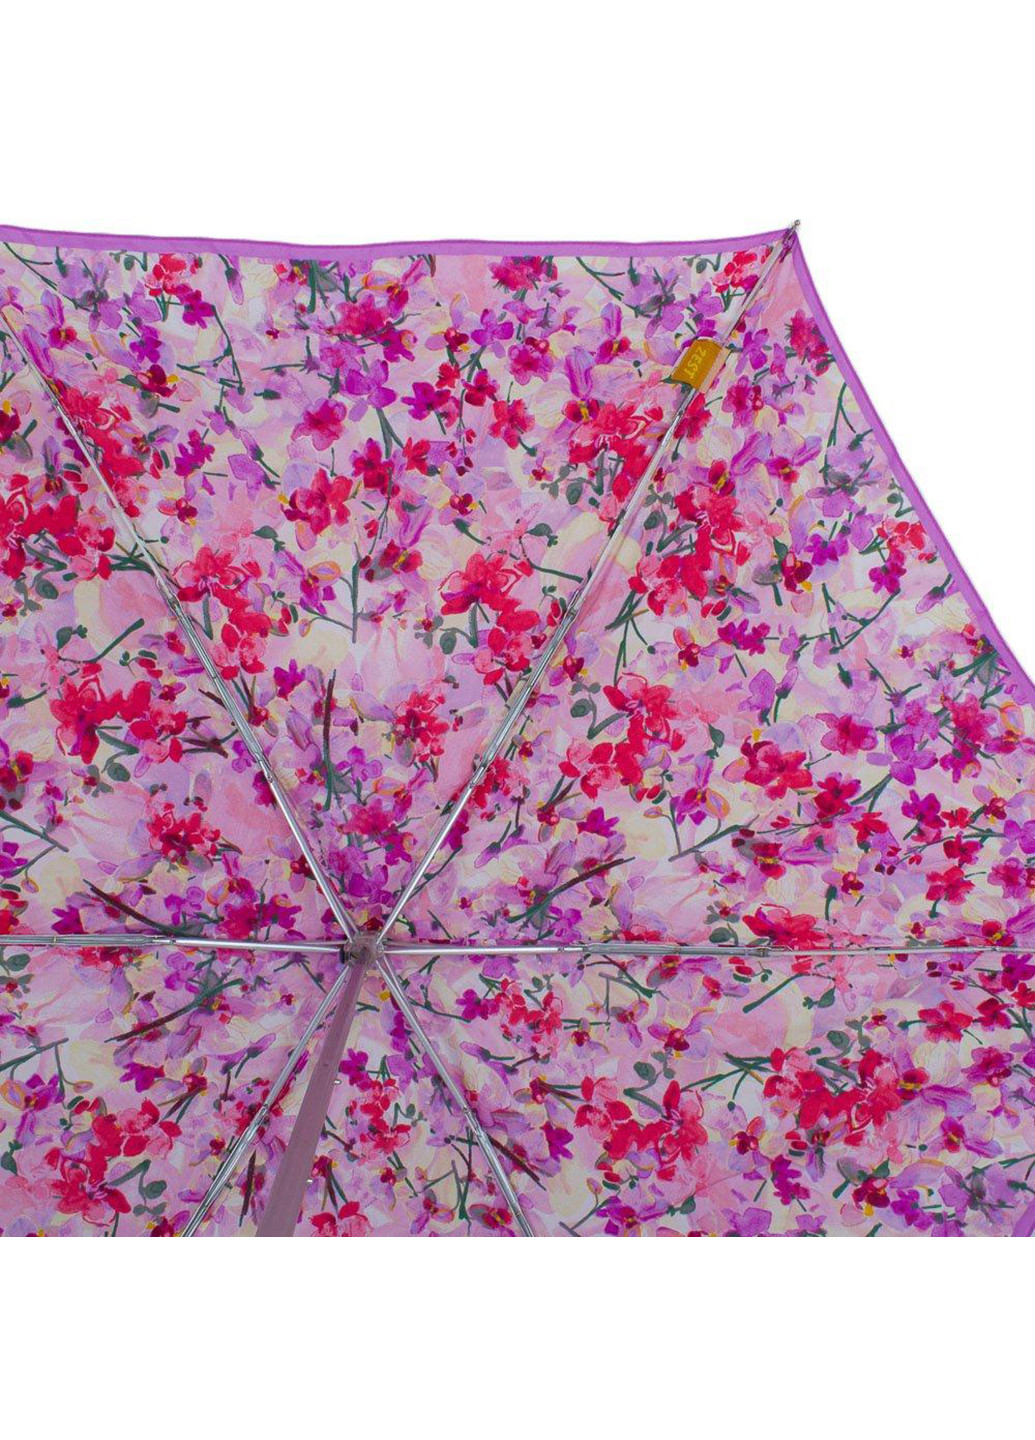 Жіноча складна парасолька автомат 95 см Zest (255710678)